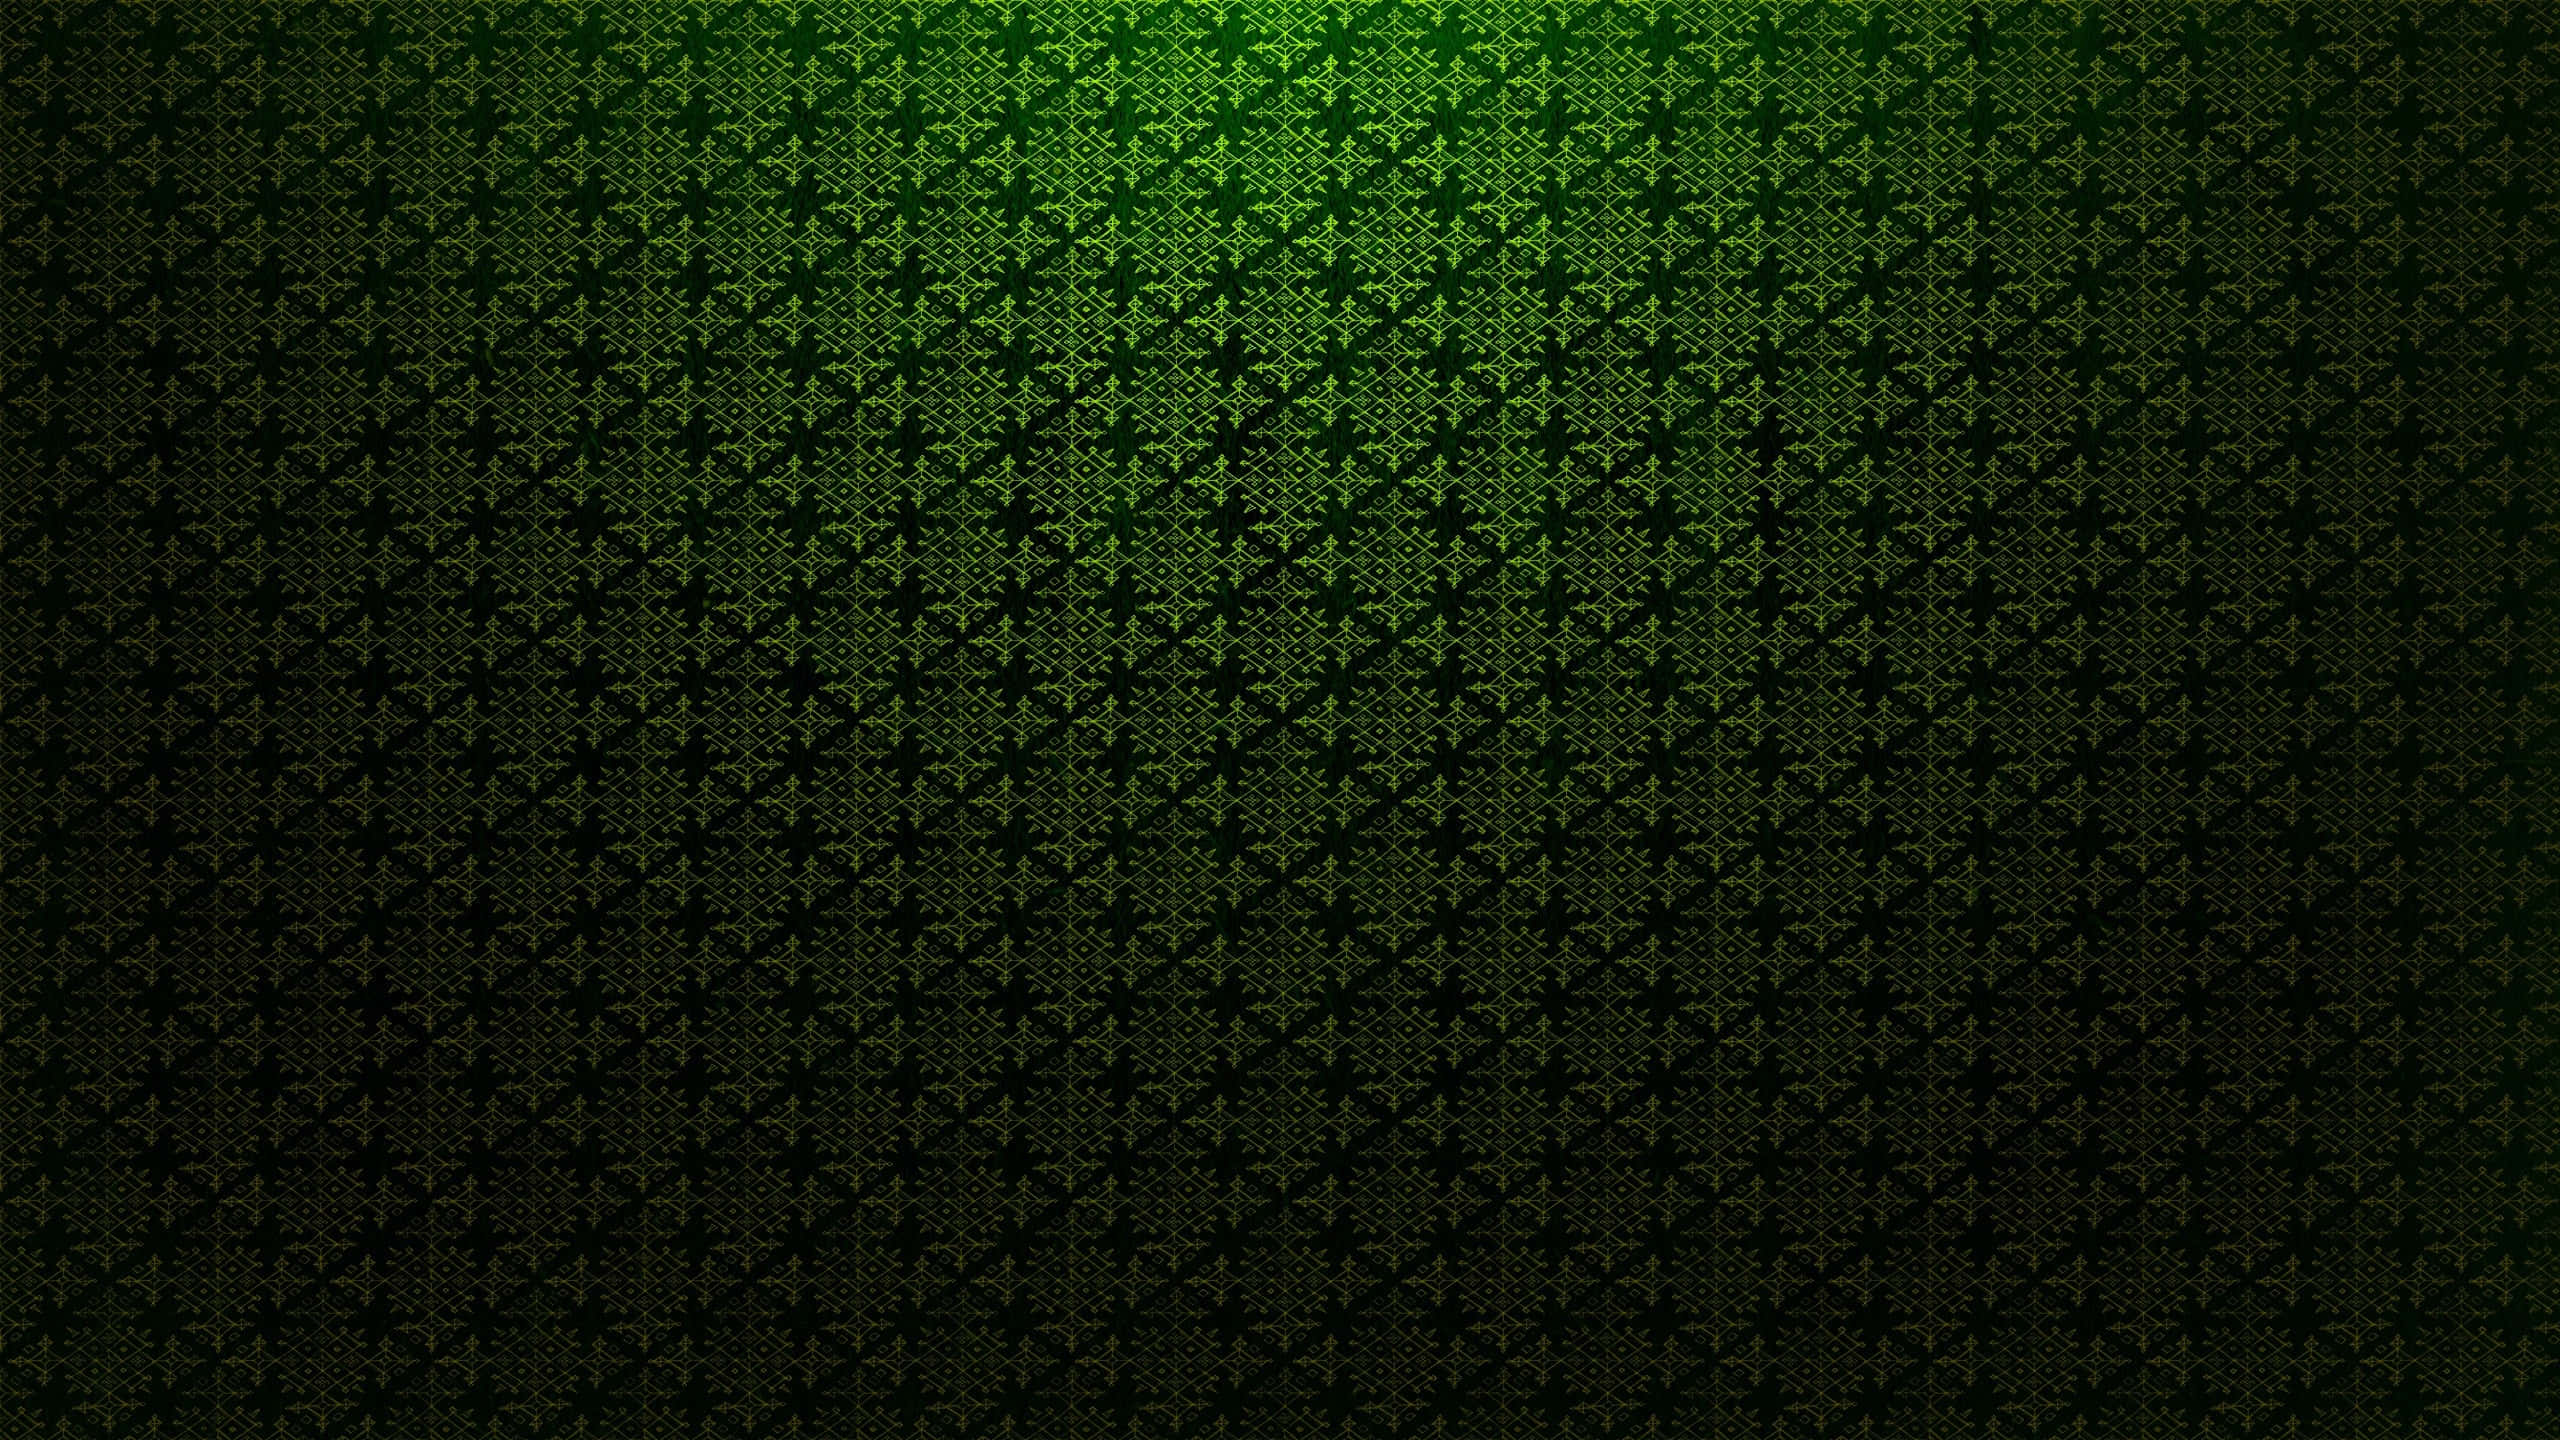 Feel the Relaxing Green Pattern Wallpaper